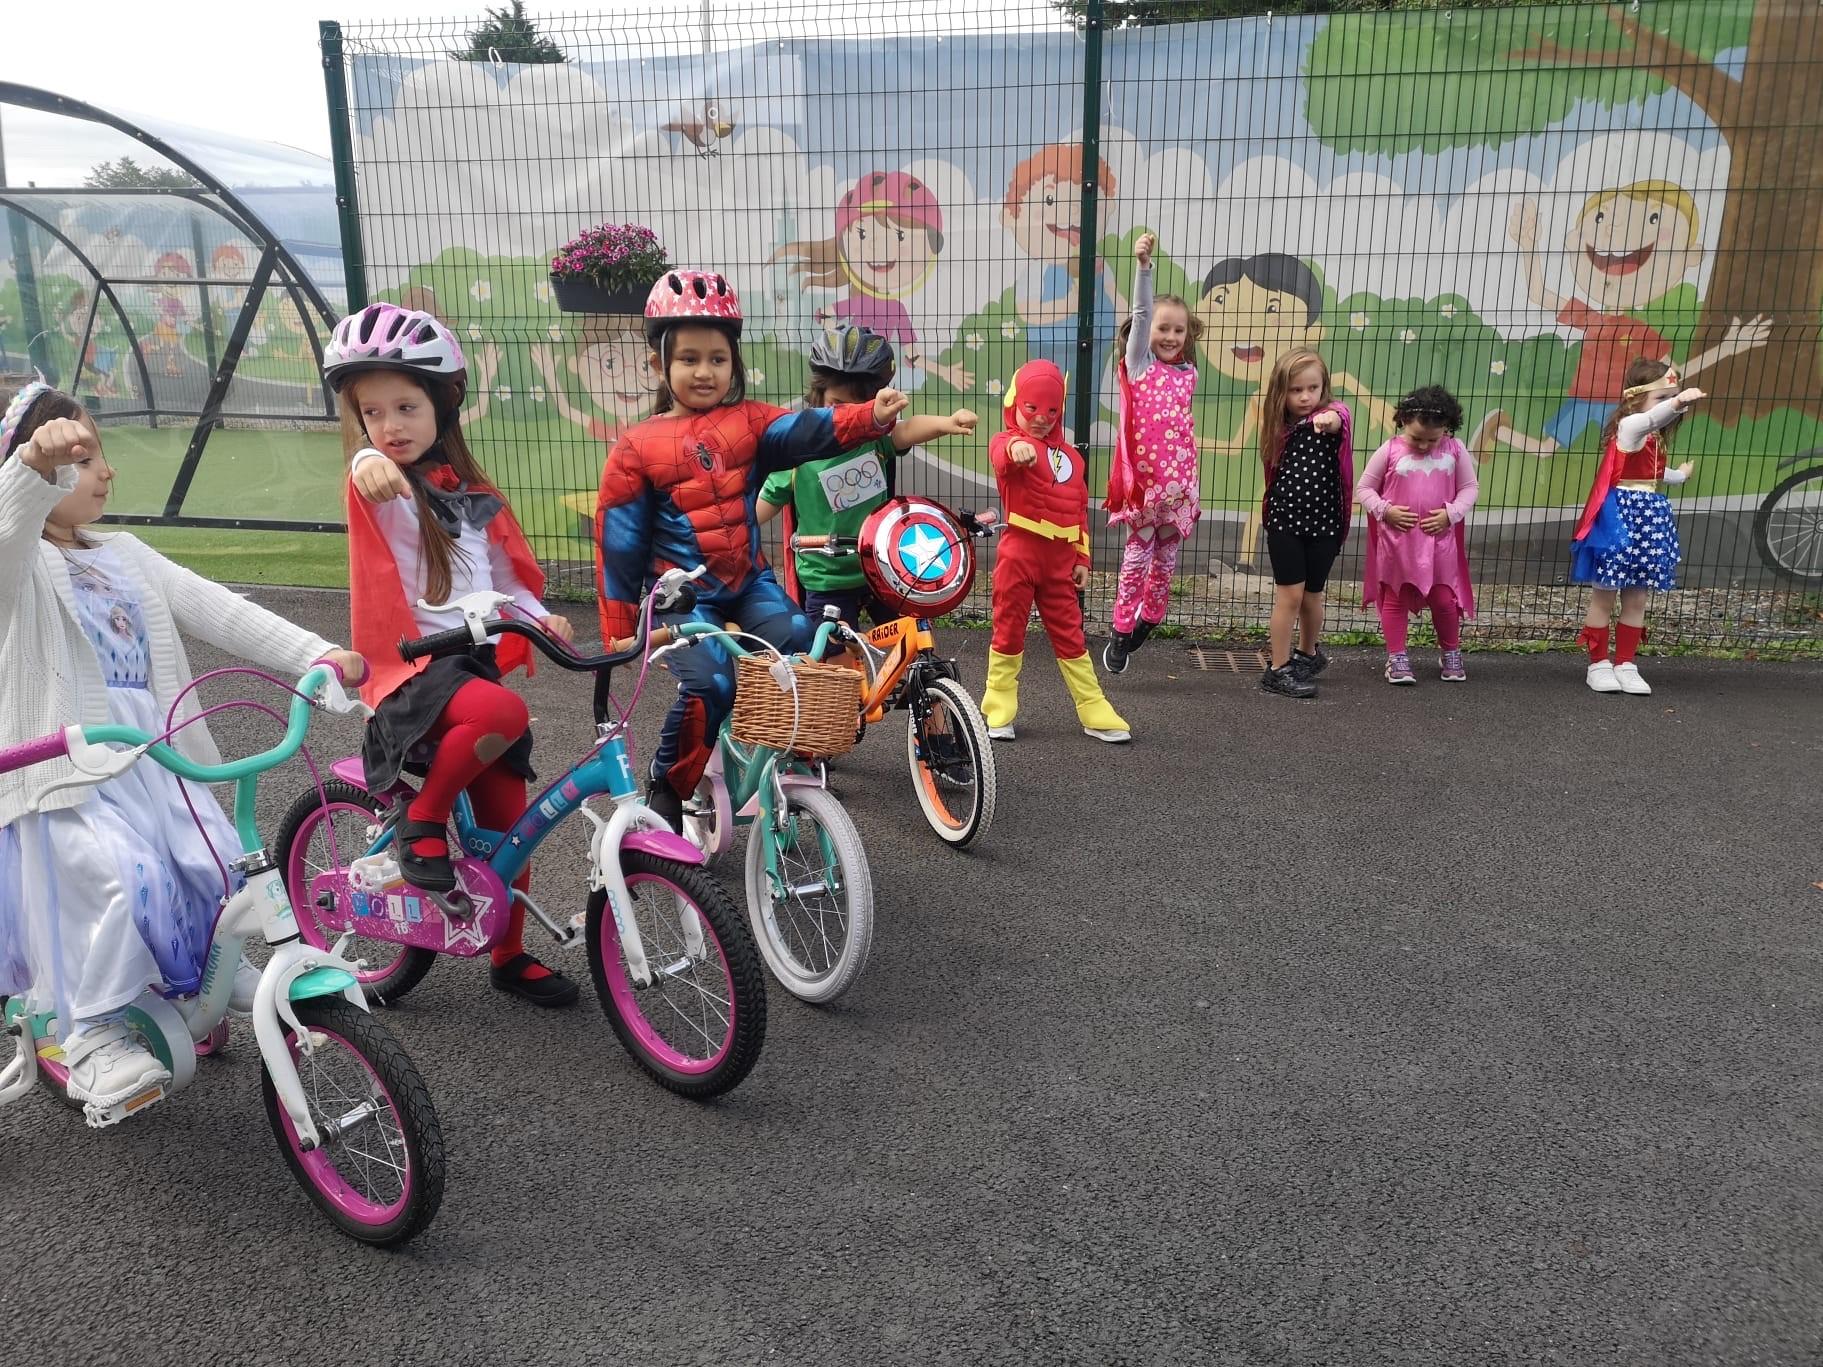 Children on bikes wearing superhero costumes